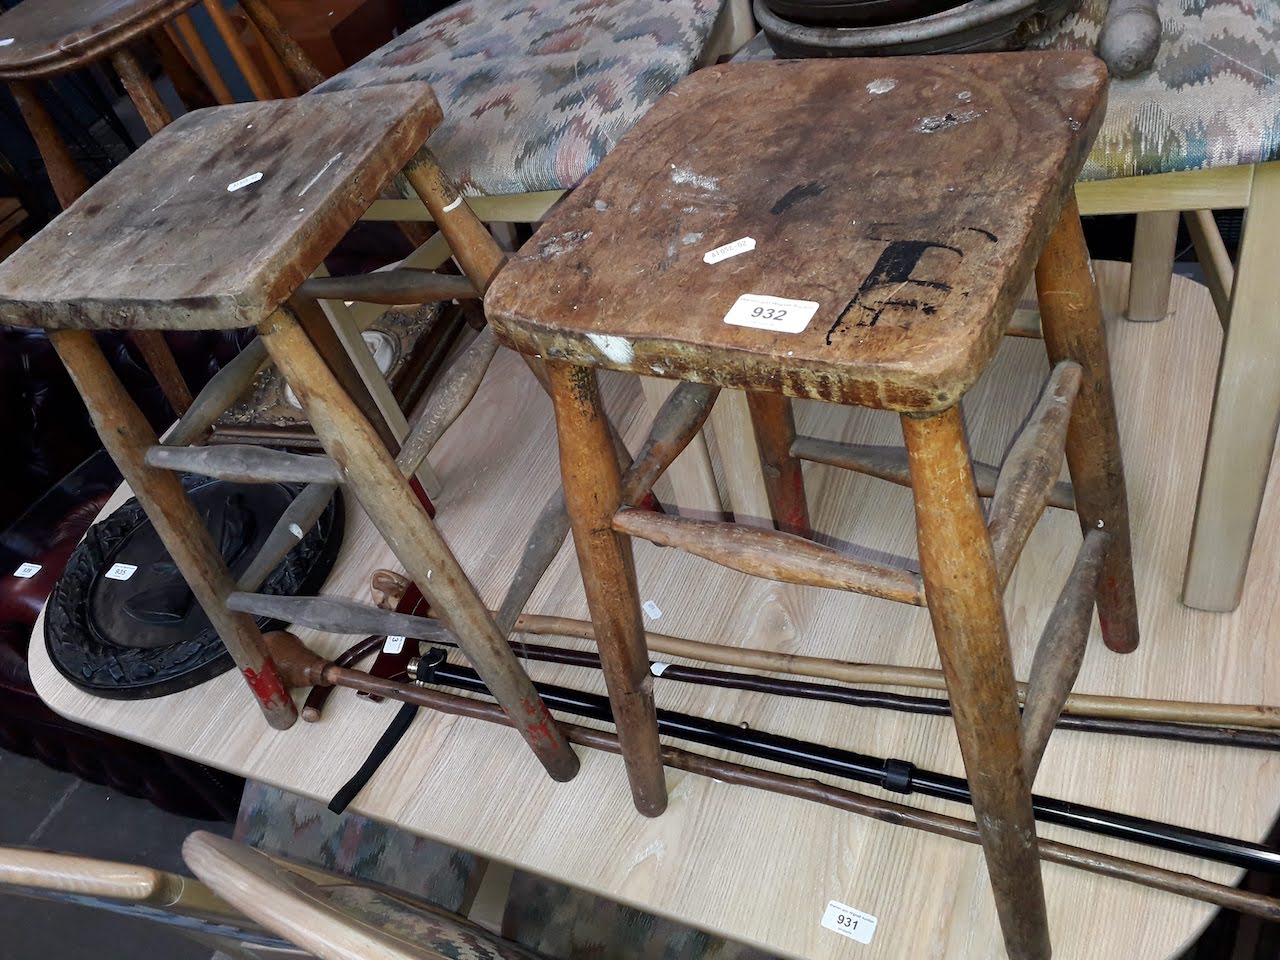 Three old stools